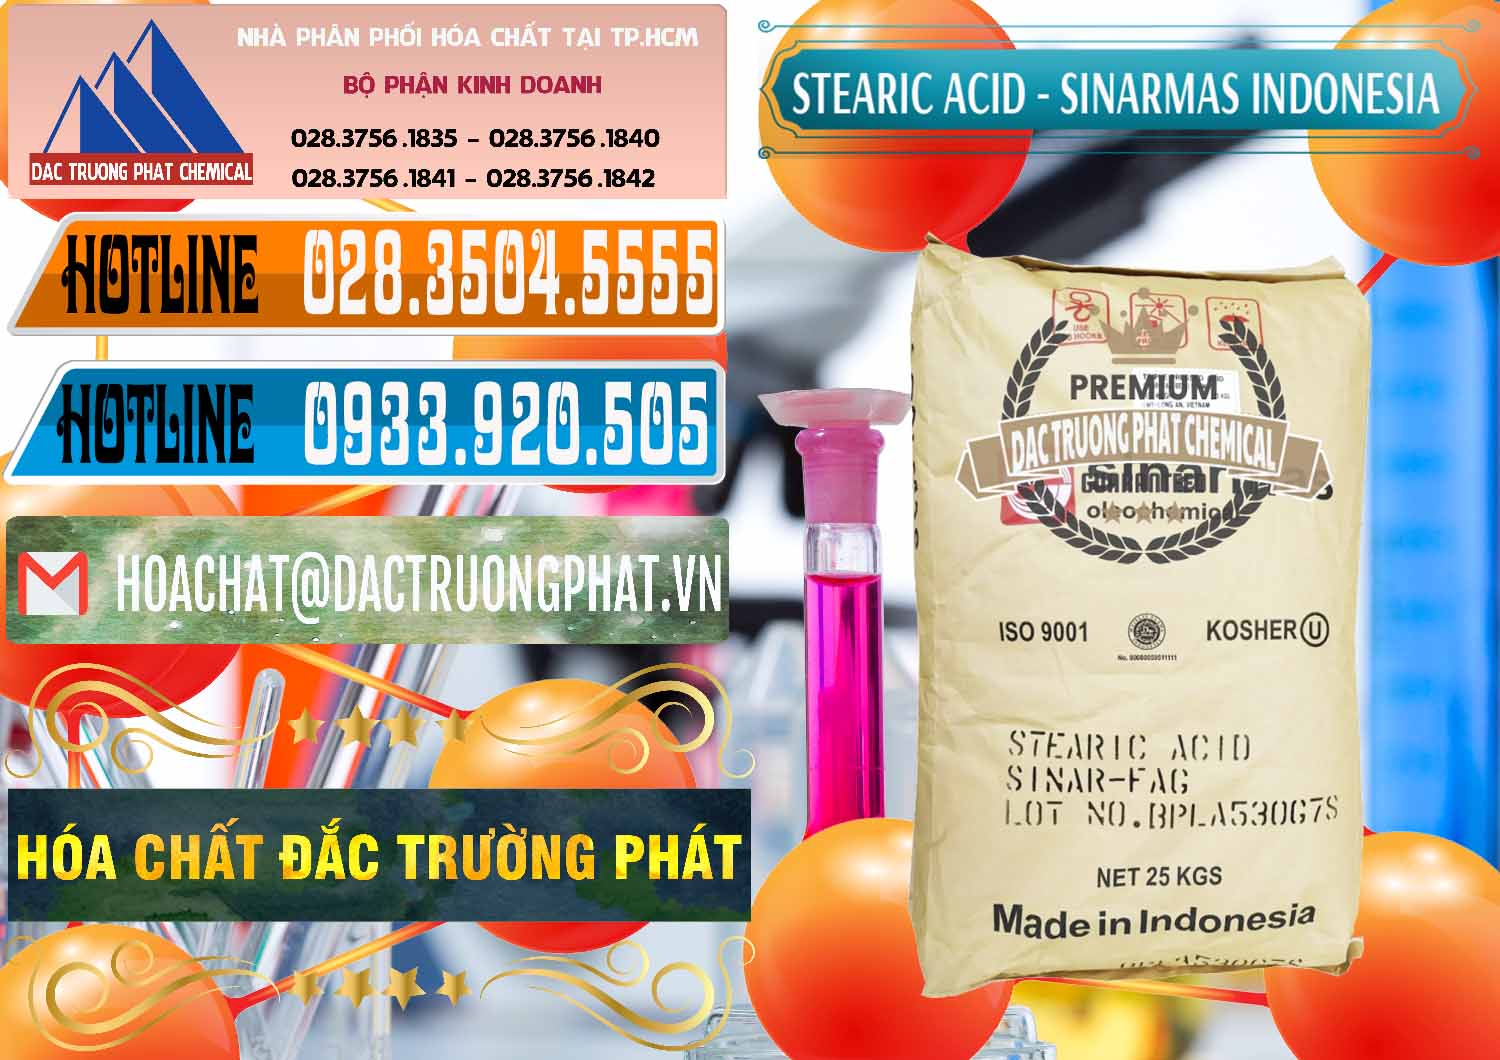 Nơi chuyên bán và cung cấp Axit Stearic - Stearic Acid Sinarmas Indonesia - 0389 - Đơn vị chuyên cung cấp ( kinh doanh ) hóa chất tại TP.HCM - stmp.net